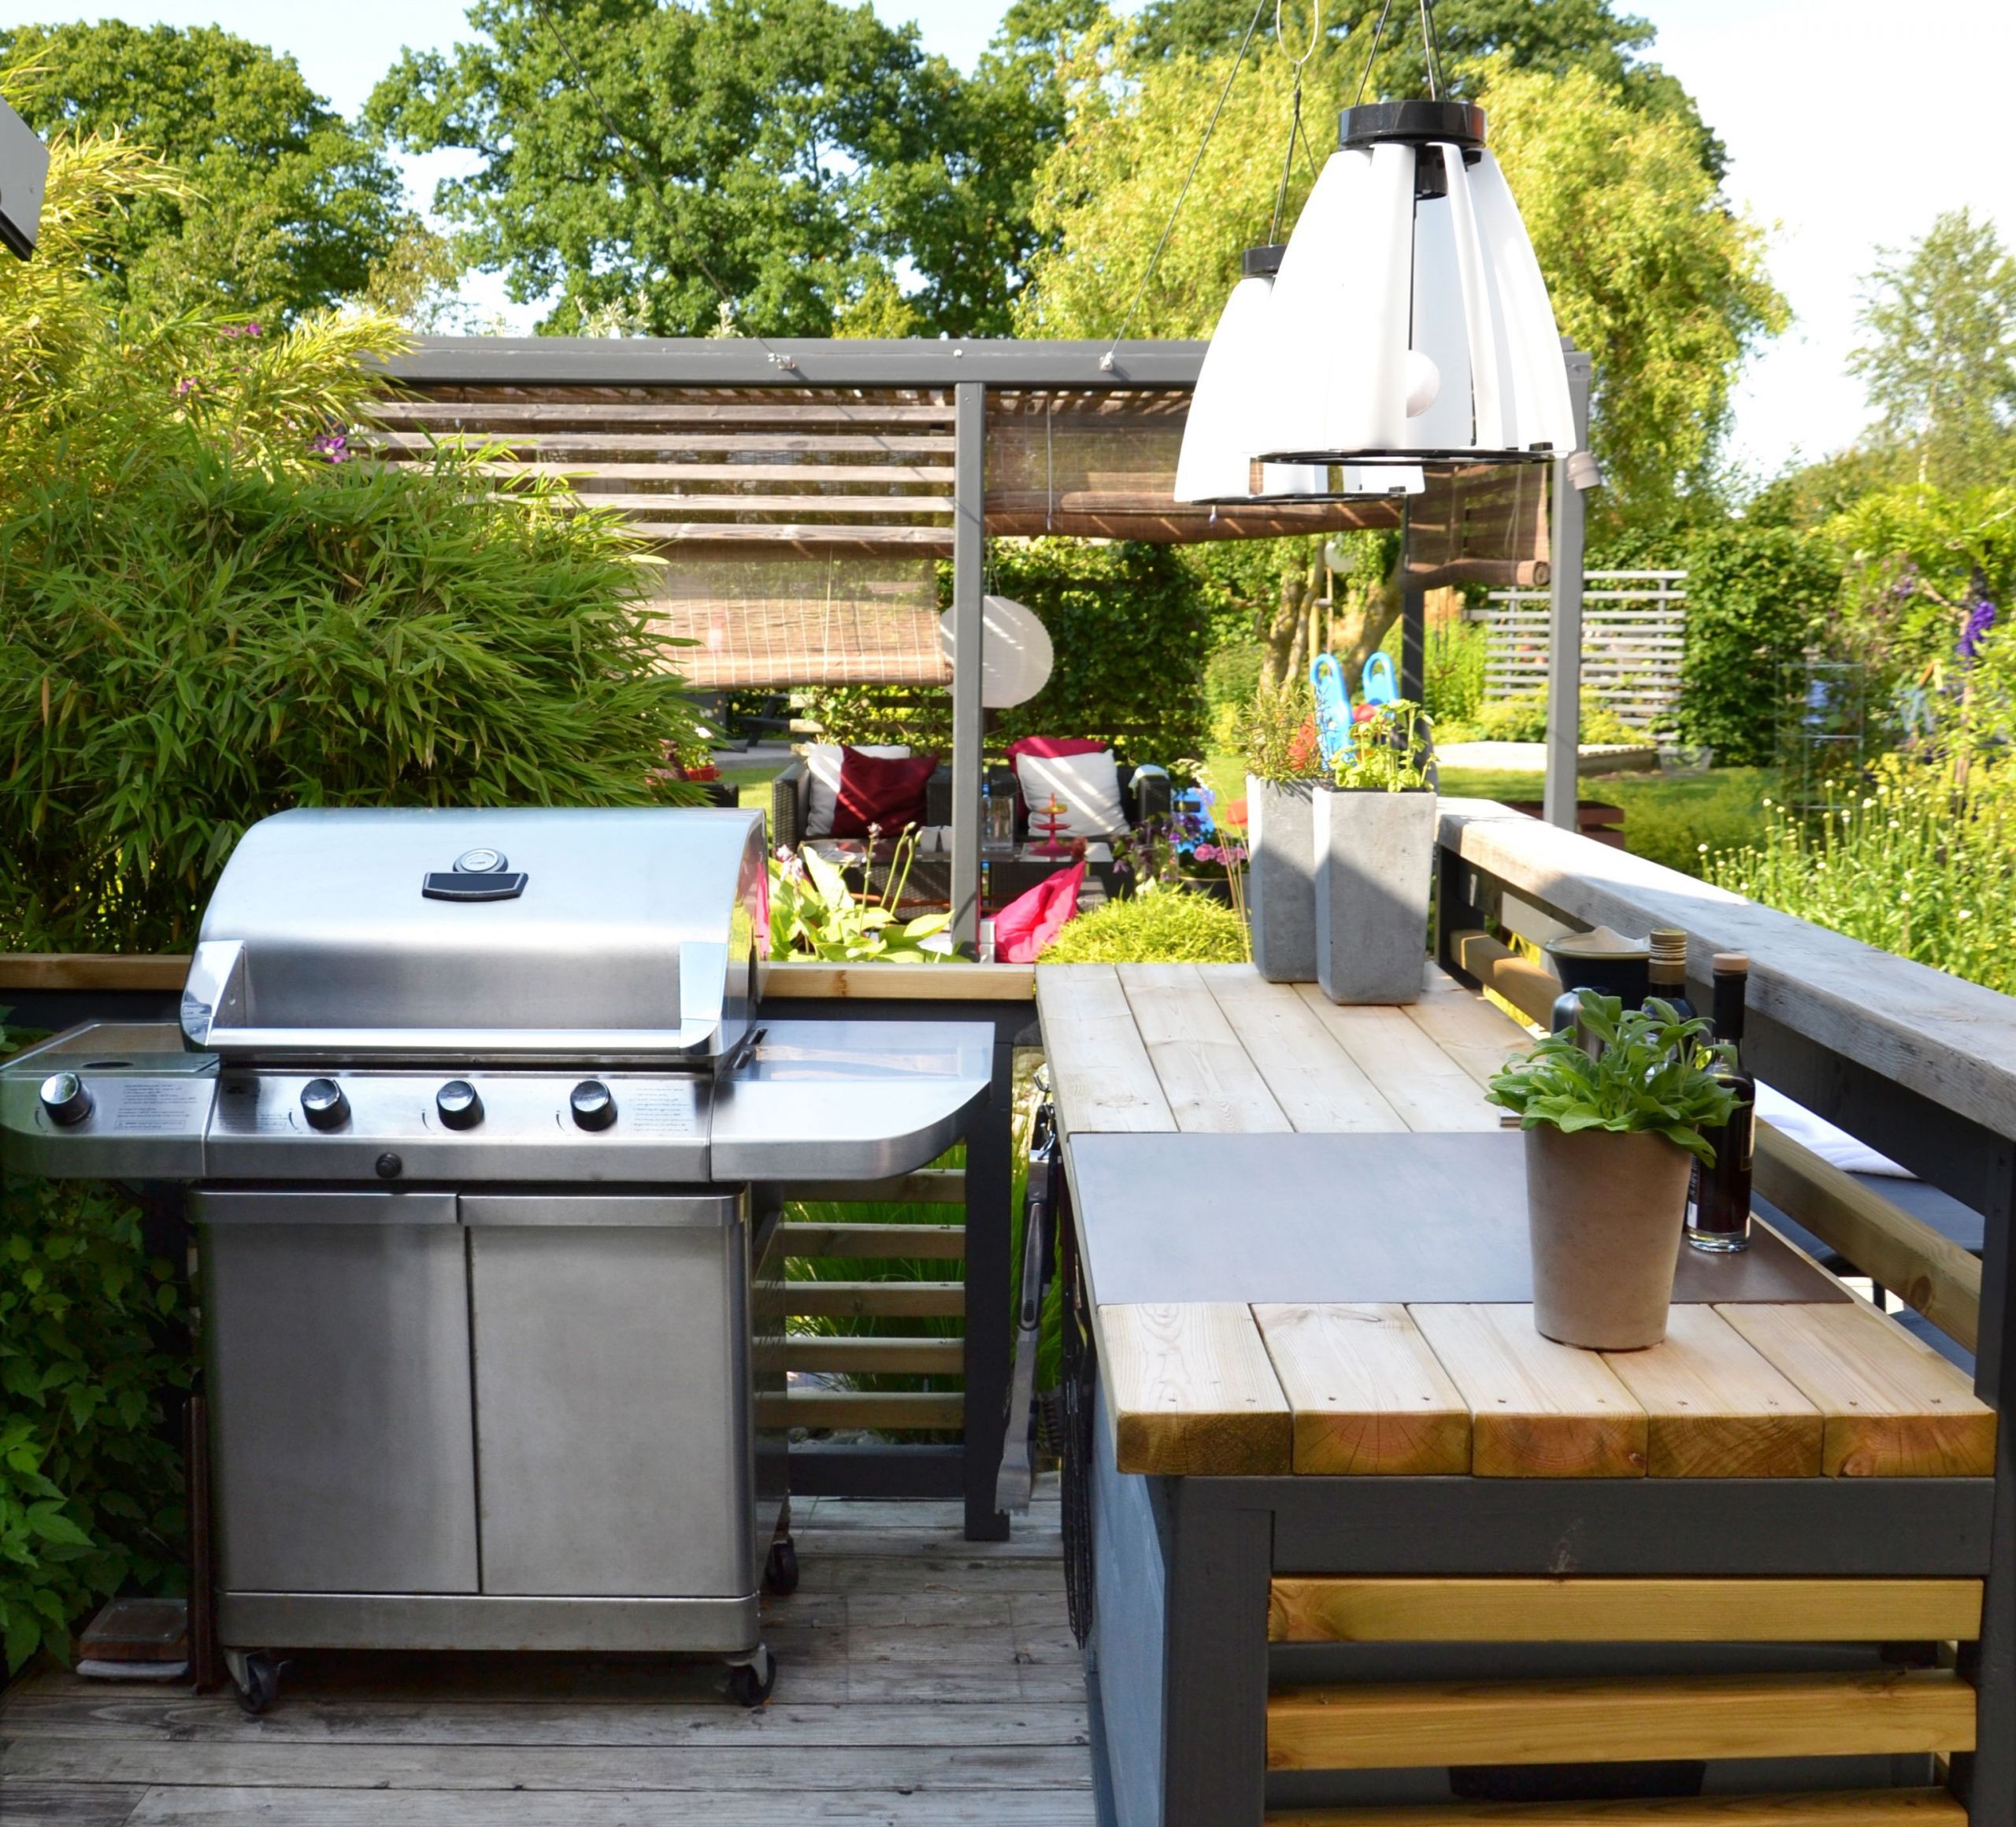 Diy Outdoor Kitchen Plans
 8 Best DIY Outdoor Kitchen Plans